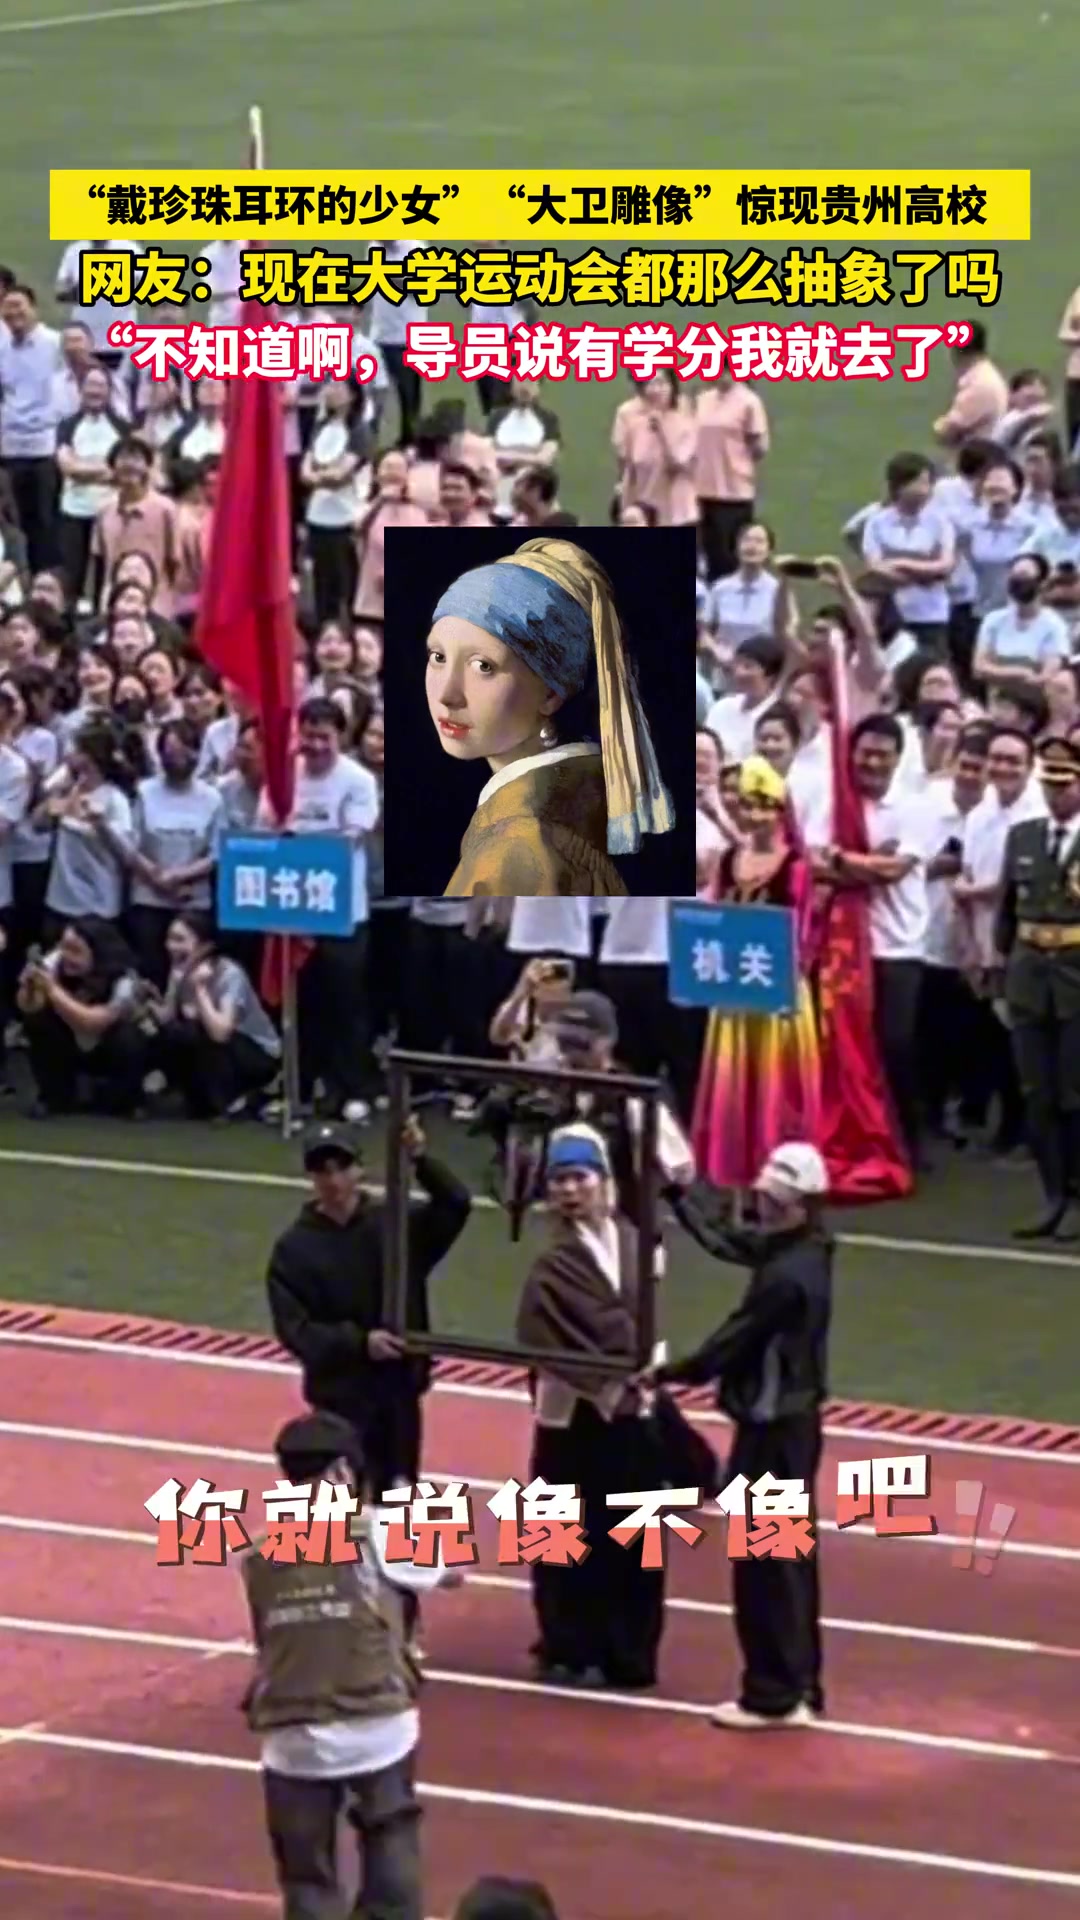 高校运动会上惊现“戴珍珠耳环的少女”和“大卫雕像”